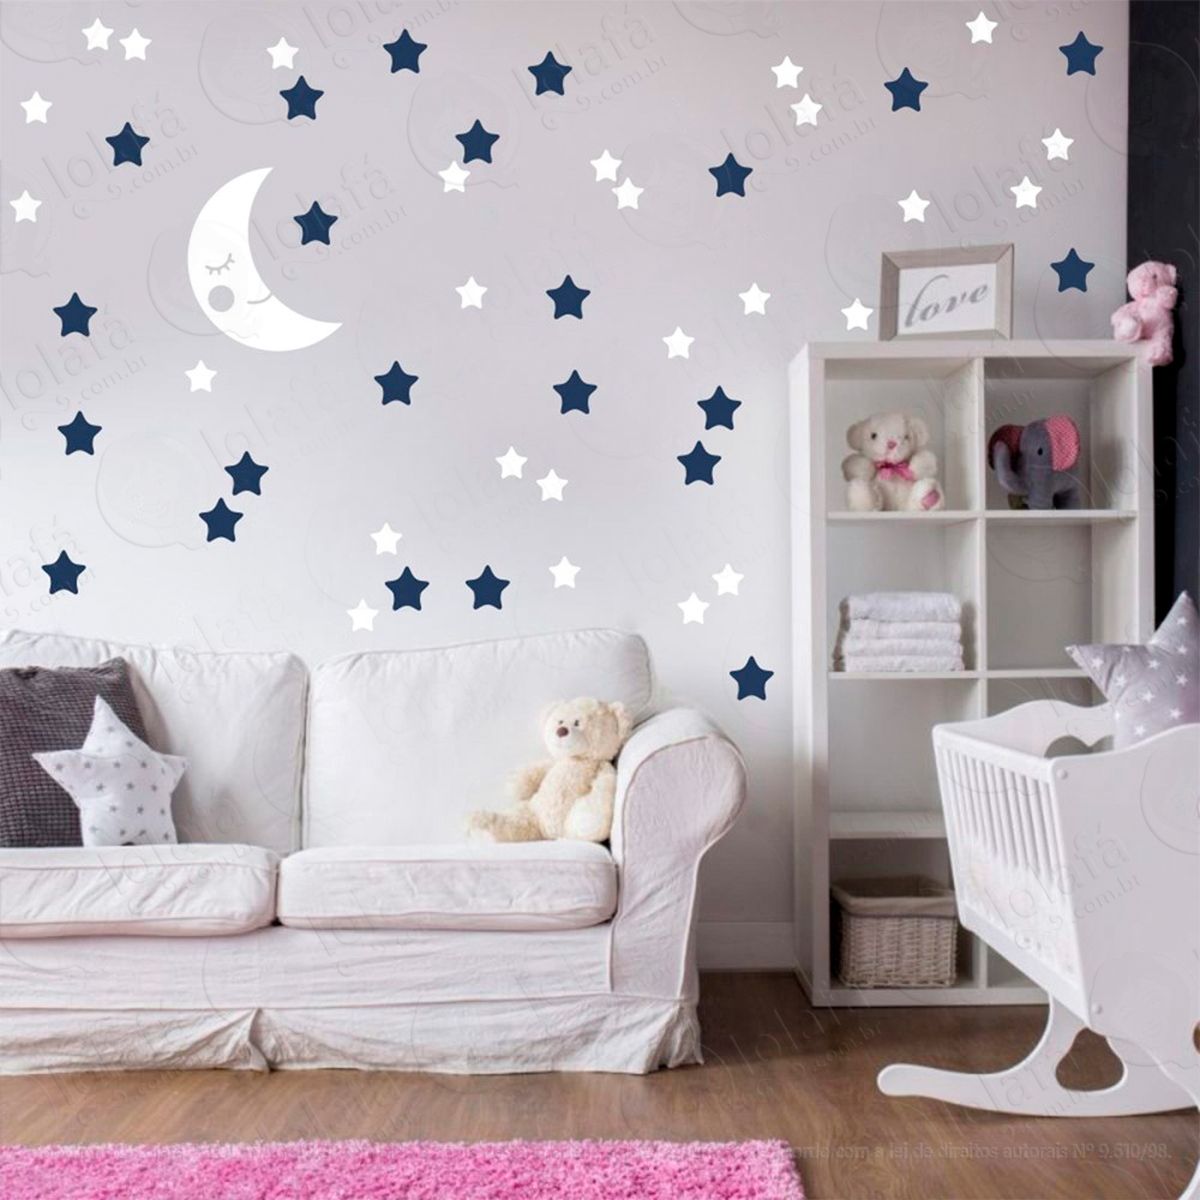 adesivos lua e estrelas 53 peças adesivos para quarto de bebê infantil - mod:585